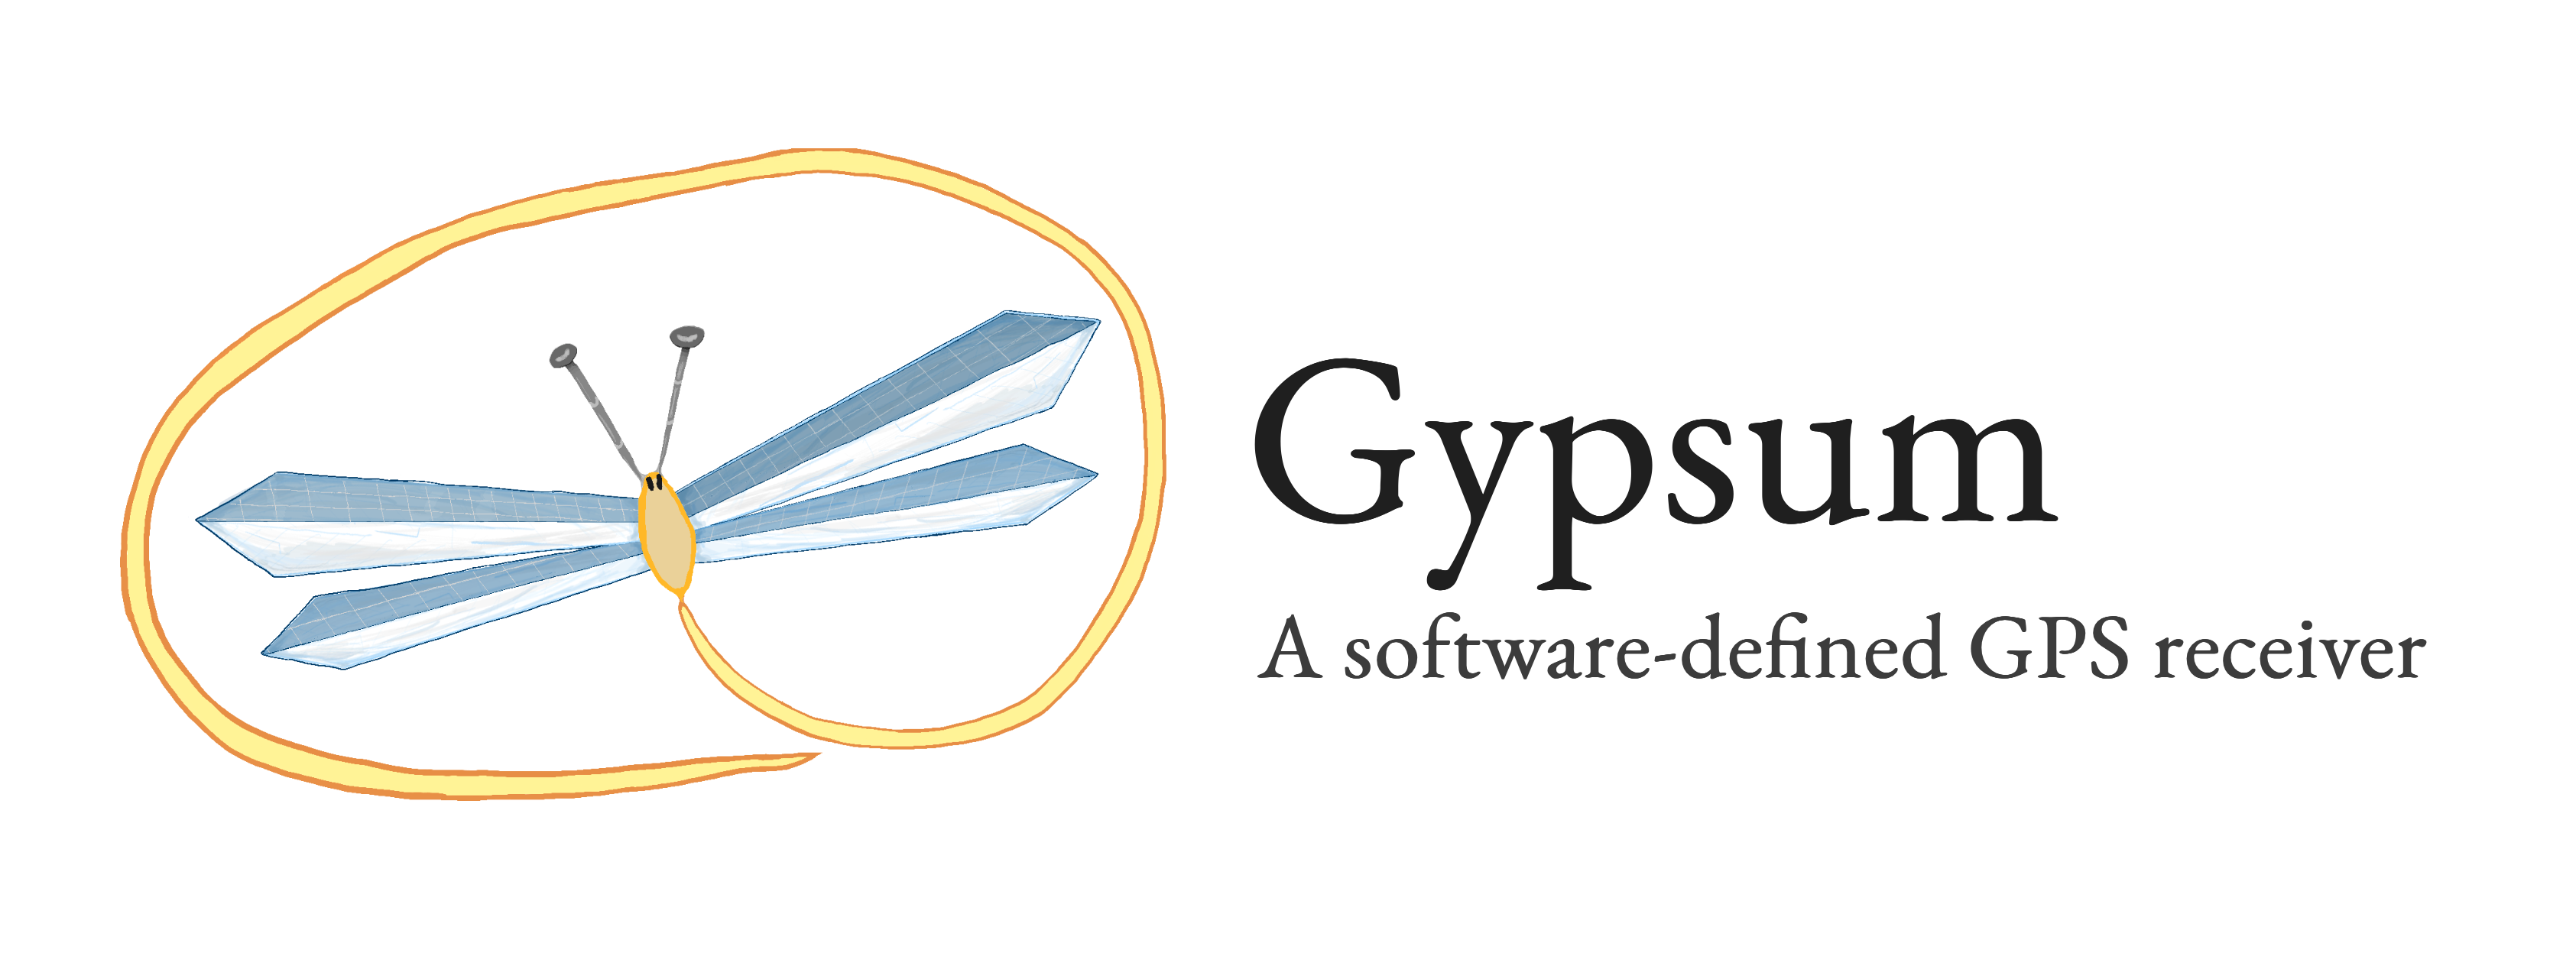 gypsum_logo_header.png